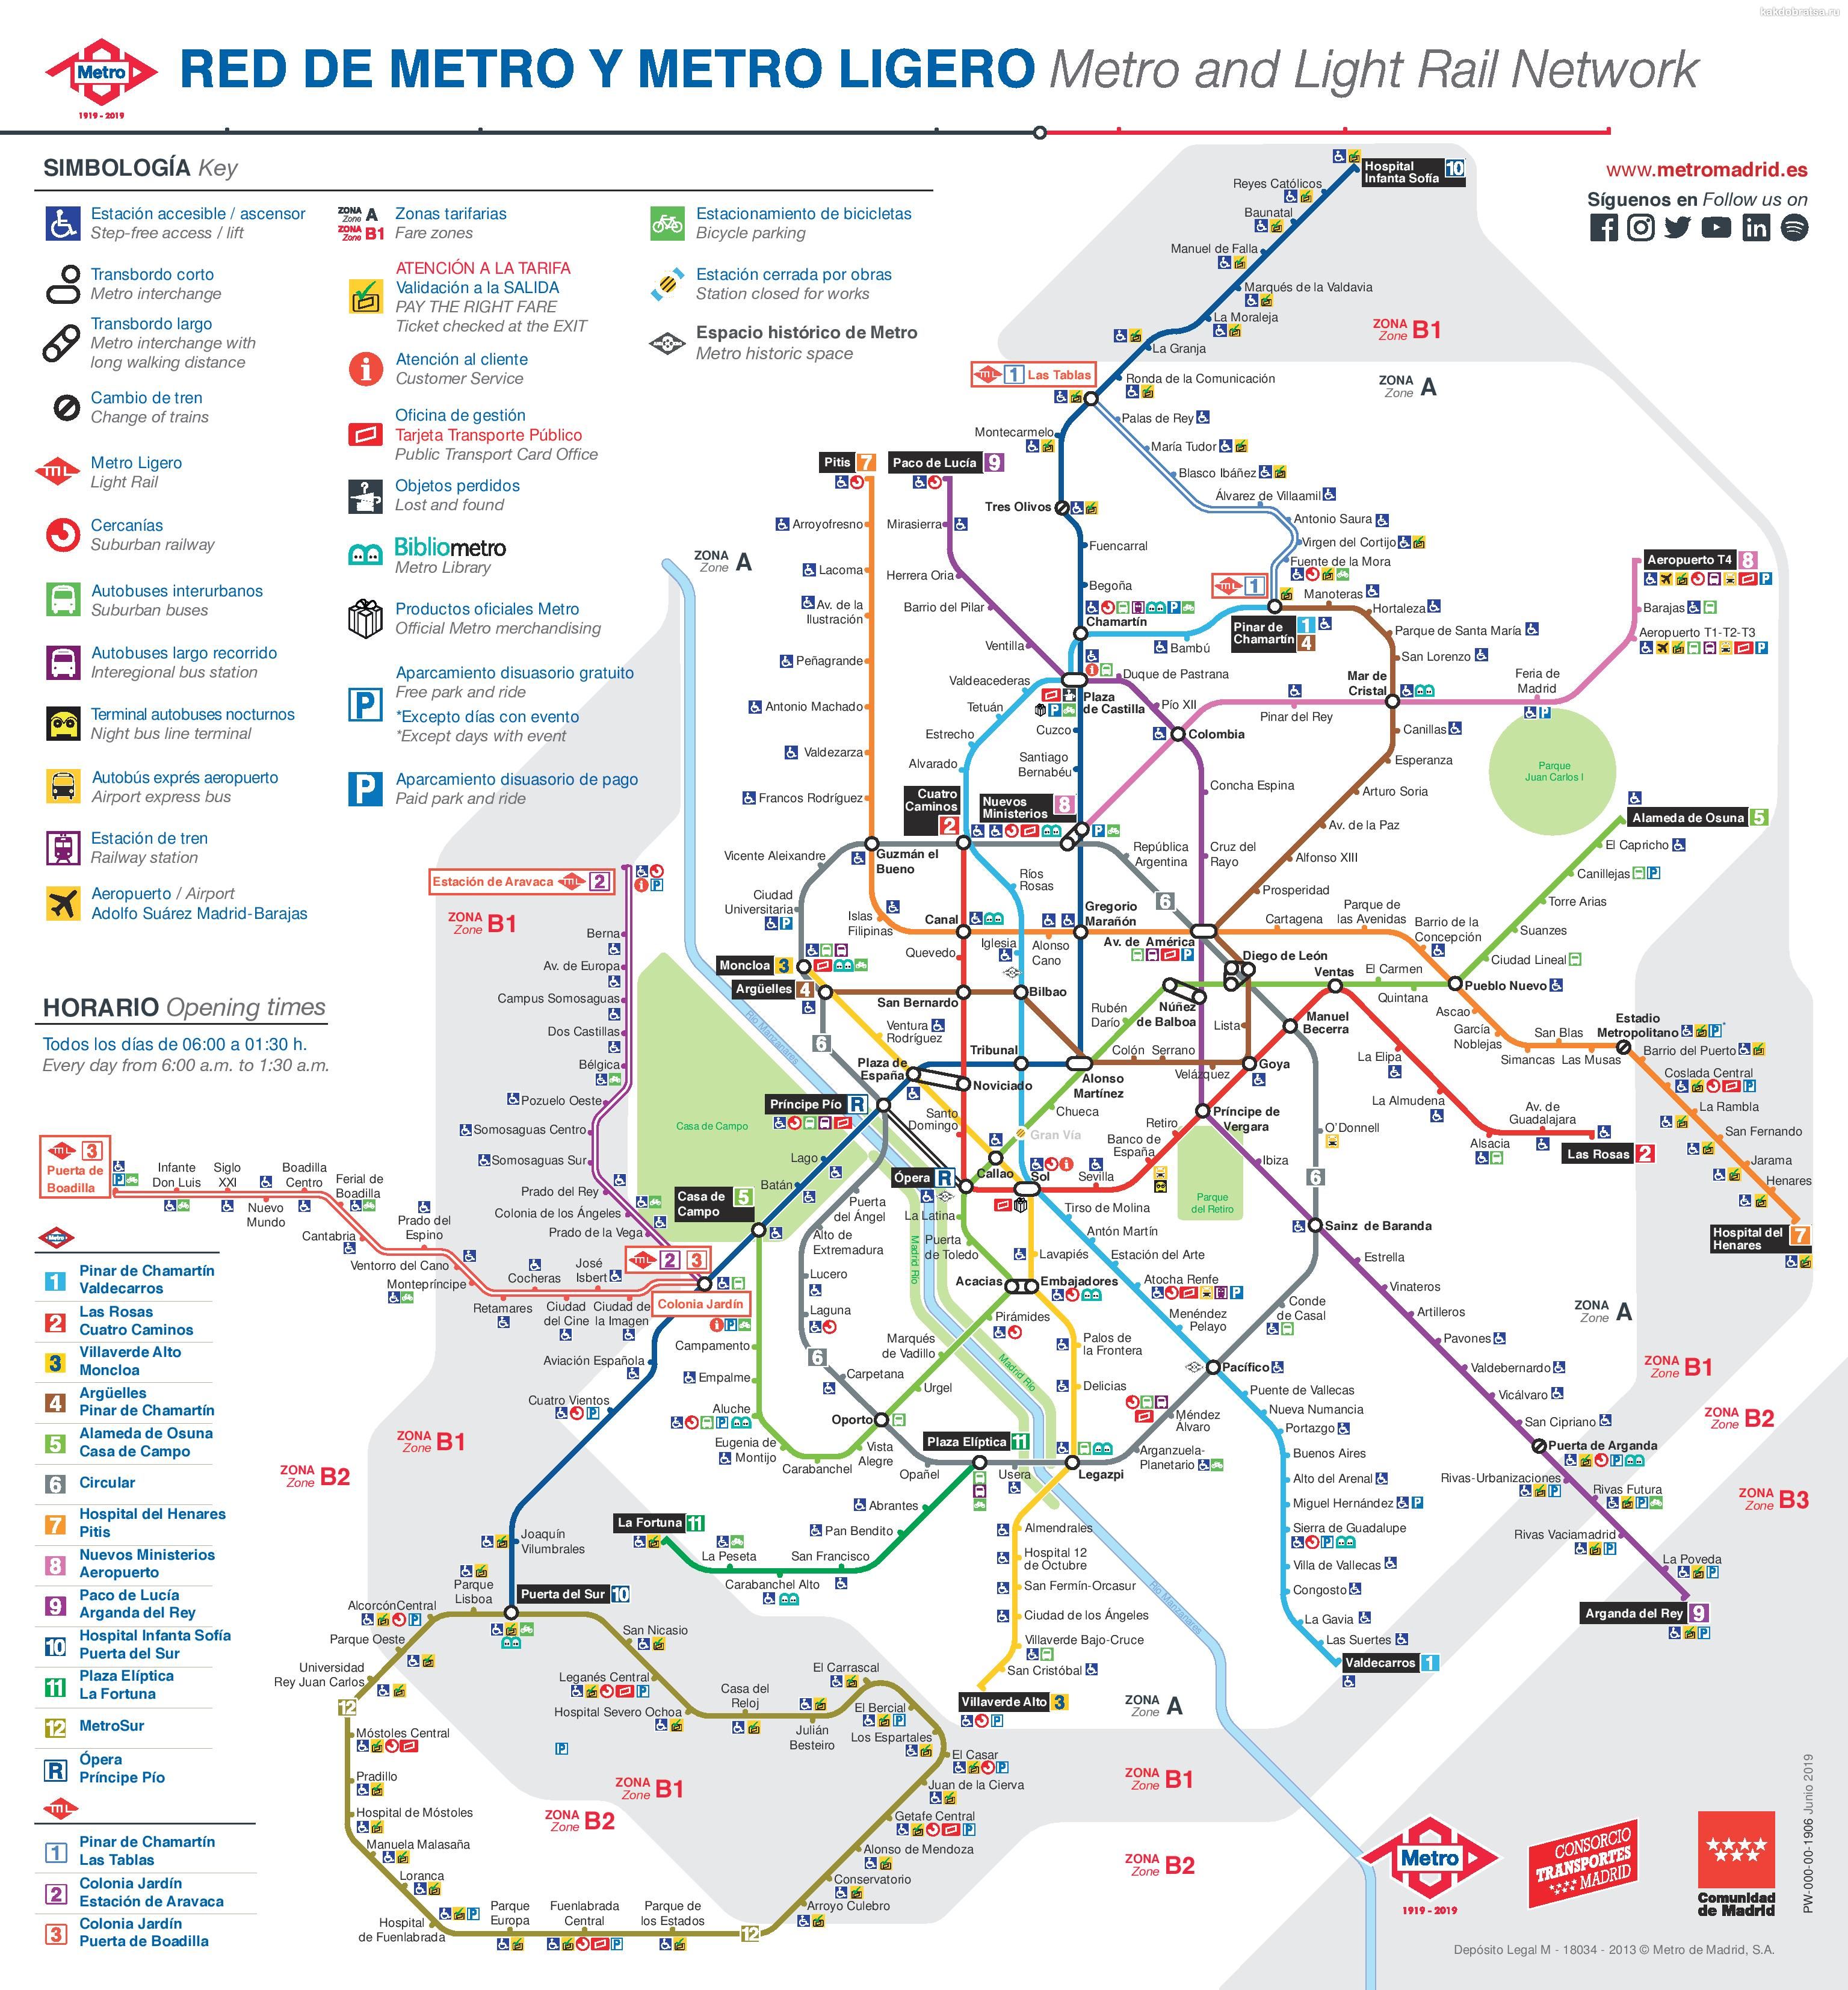 Полная подробная карта метро Мадрида